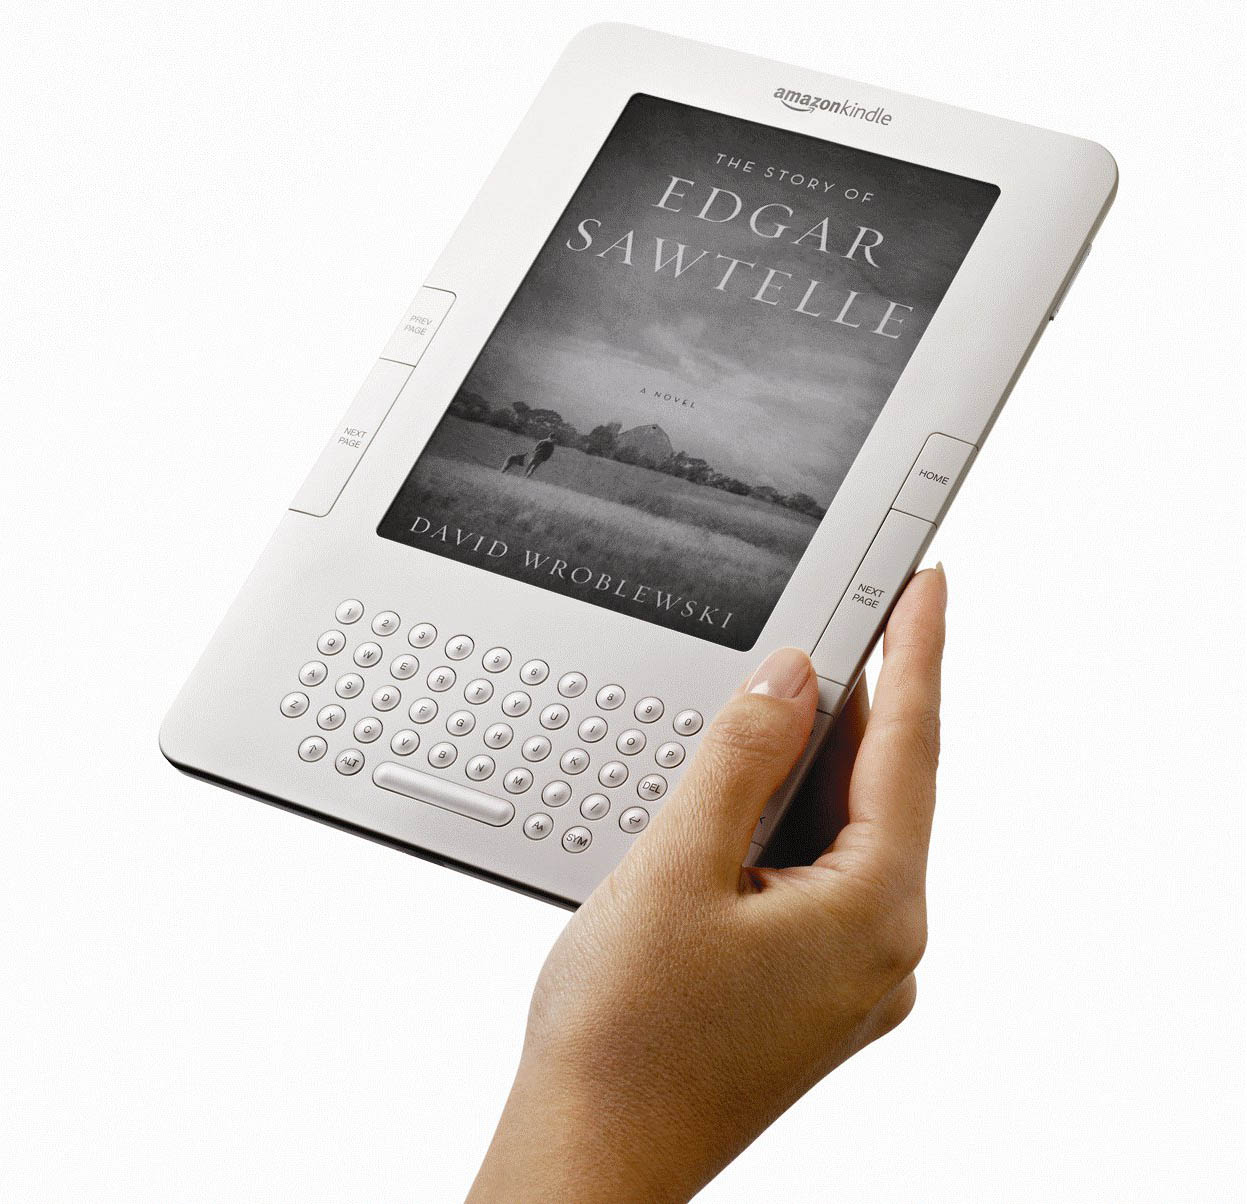 Электронная книга купить в интернет. Электронная книга Amazon Kindle DX. Киндл 3. Amazon Kindle 2. "Kindle DX" чехол.